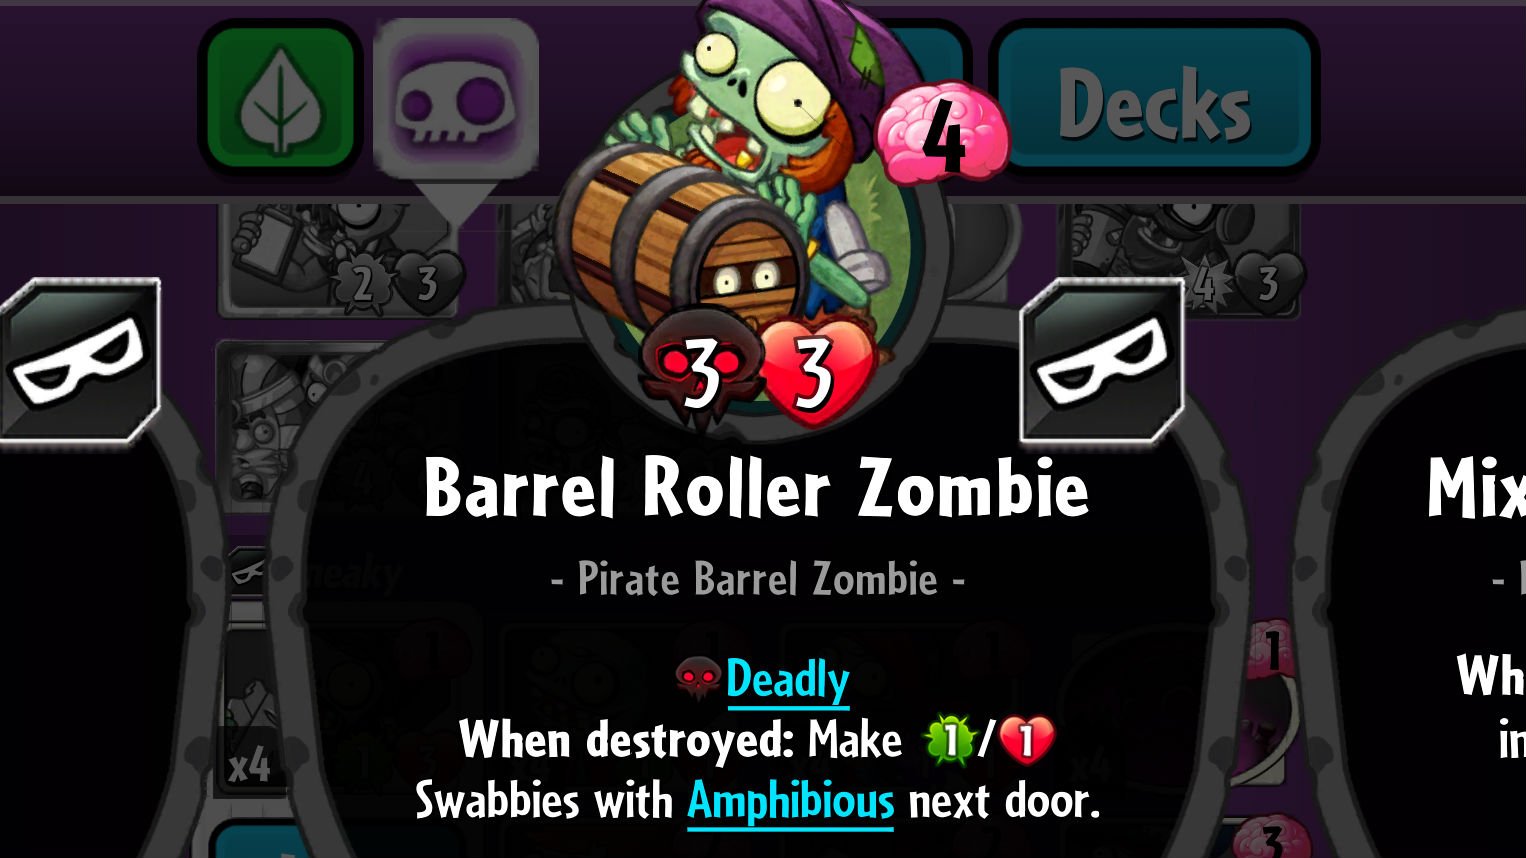 pvz-heroes-barrel-roller-zombie